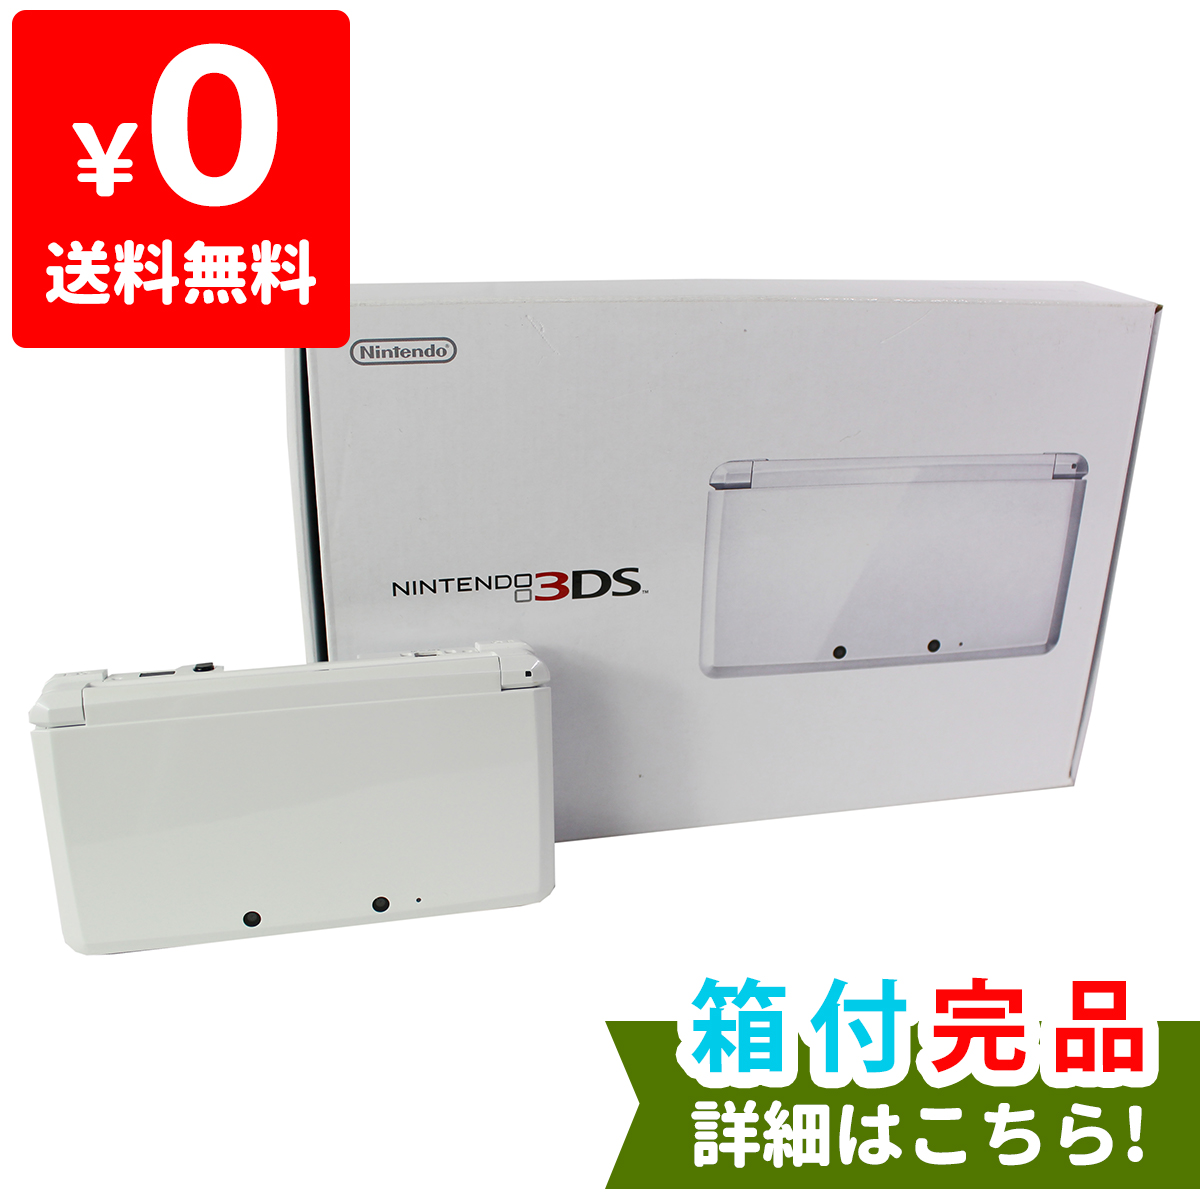 楽天市場 3ds アイスホワイト 本体 メーカー生産終了 ニンテンドー 任天堂 Nintendo ゲーム機 中古 Iimo リユース店